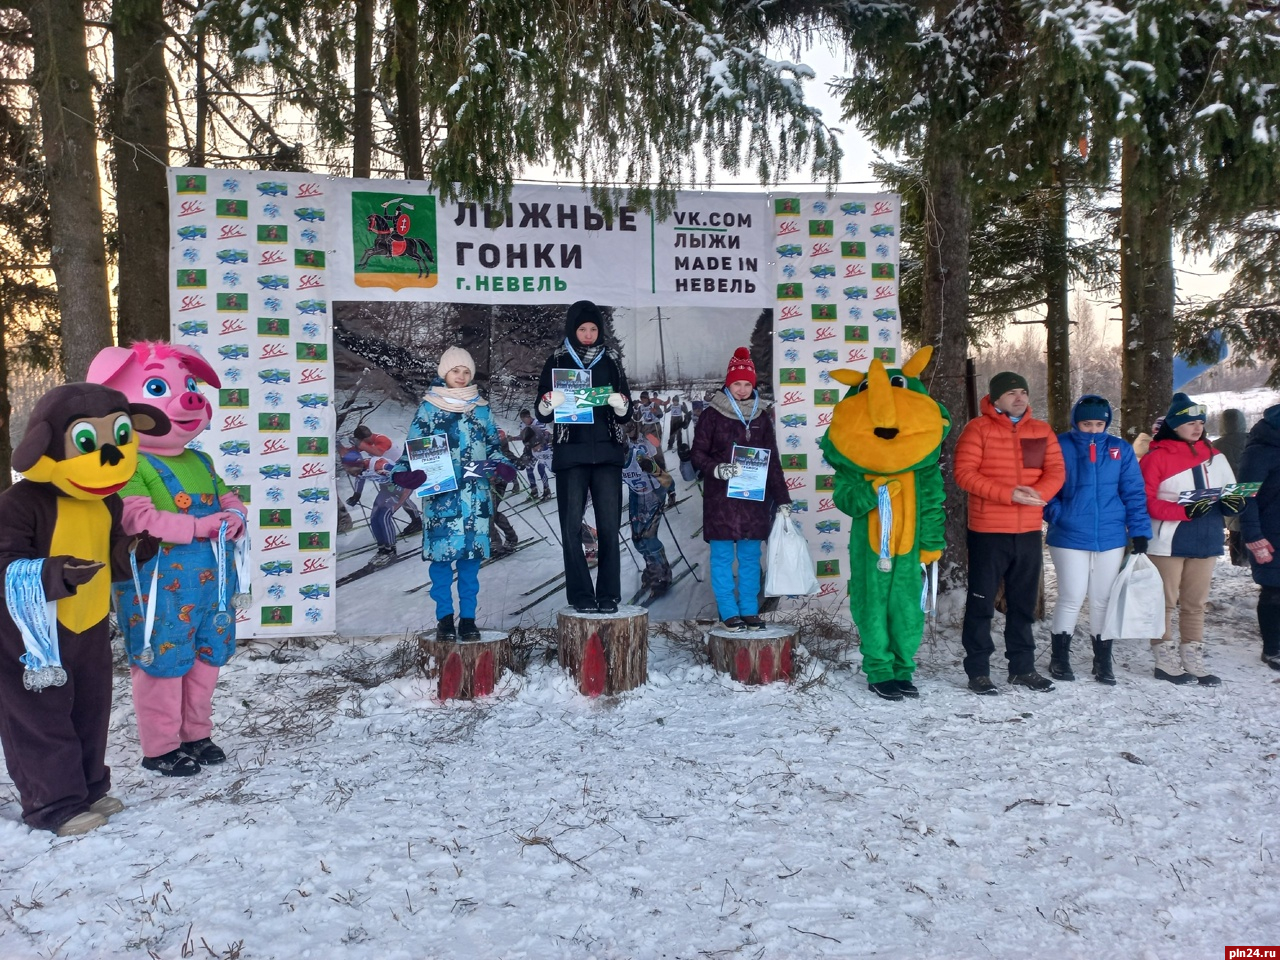 Первый этап кубка Псковской области по лыжным гонкам прошел в Невеле